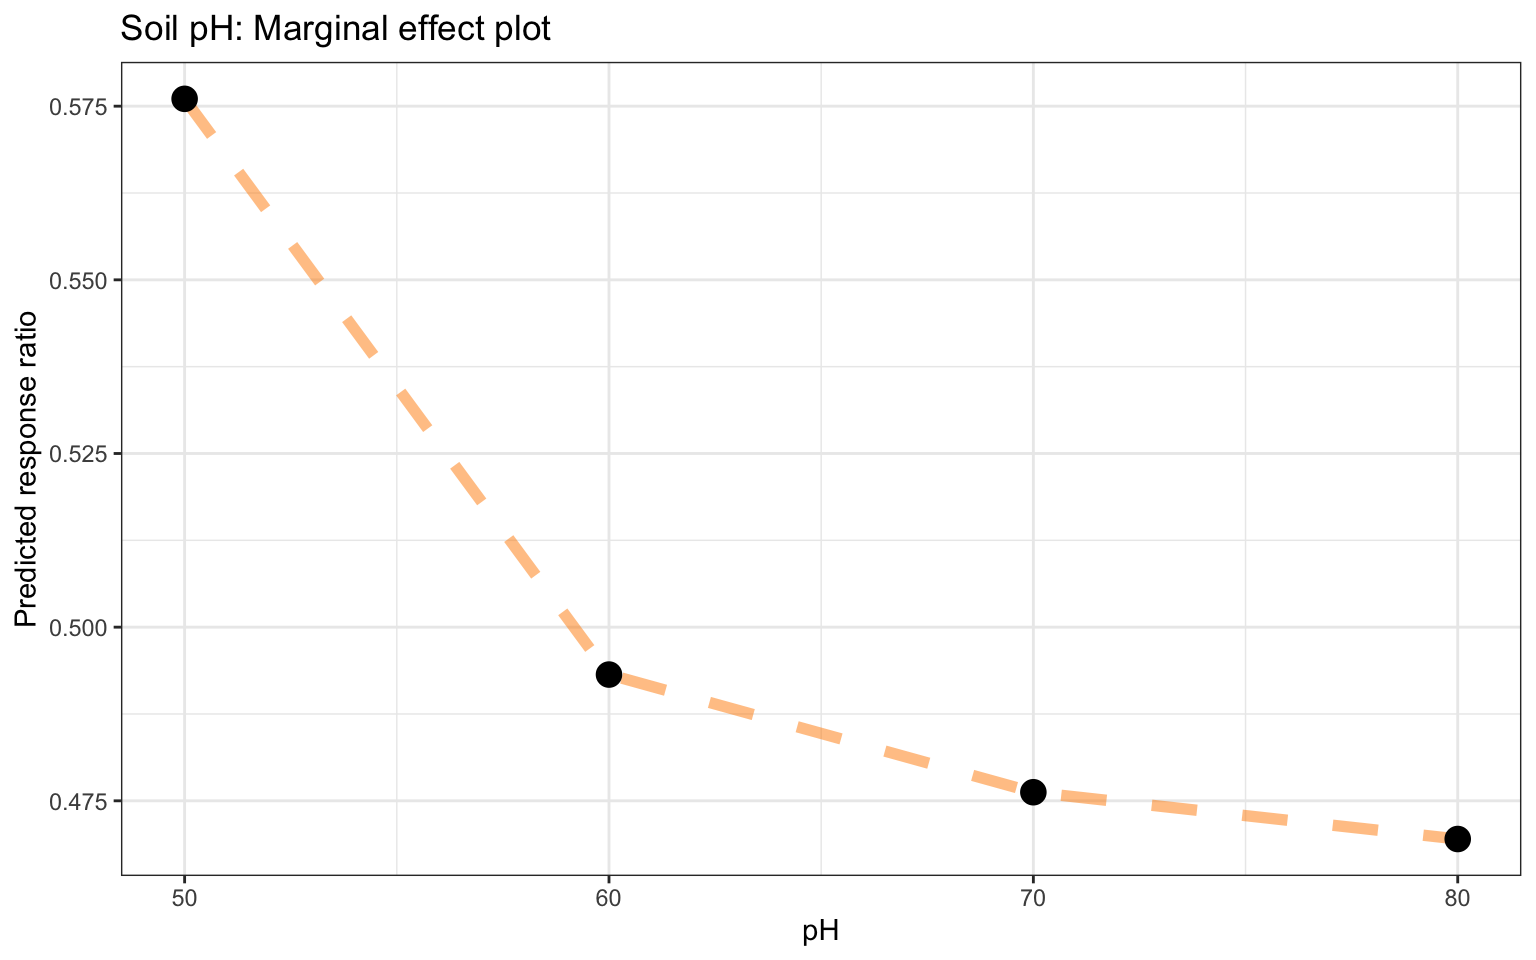 Marginal effects plot for pH based on the RF model